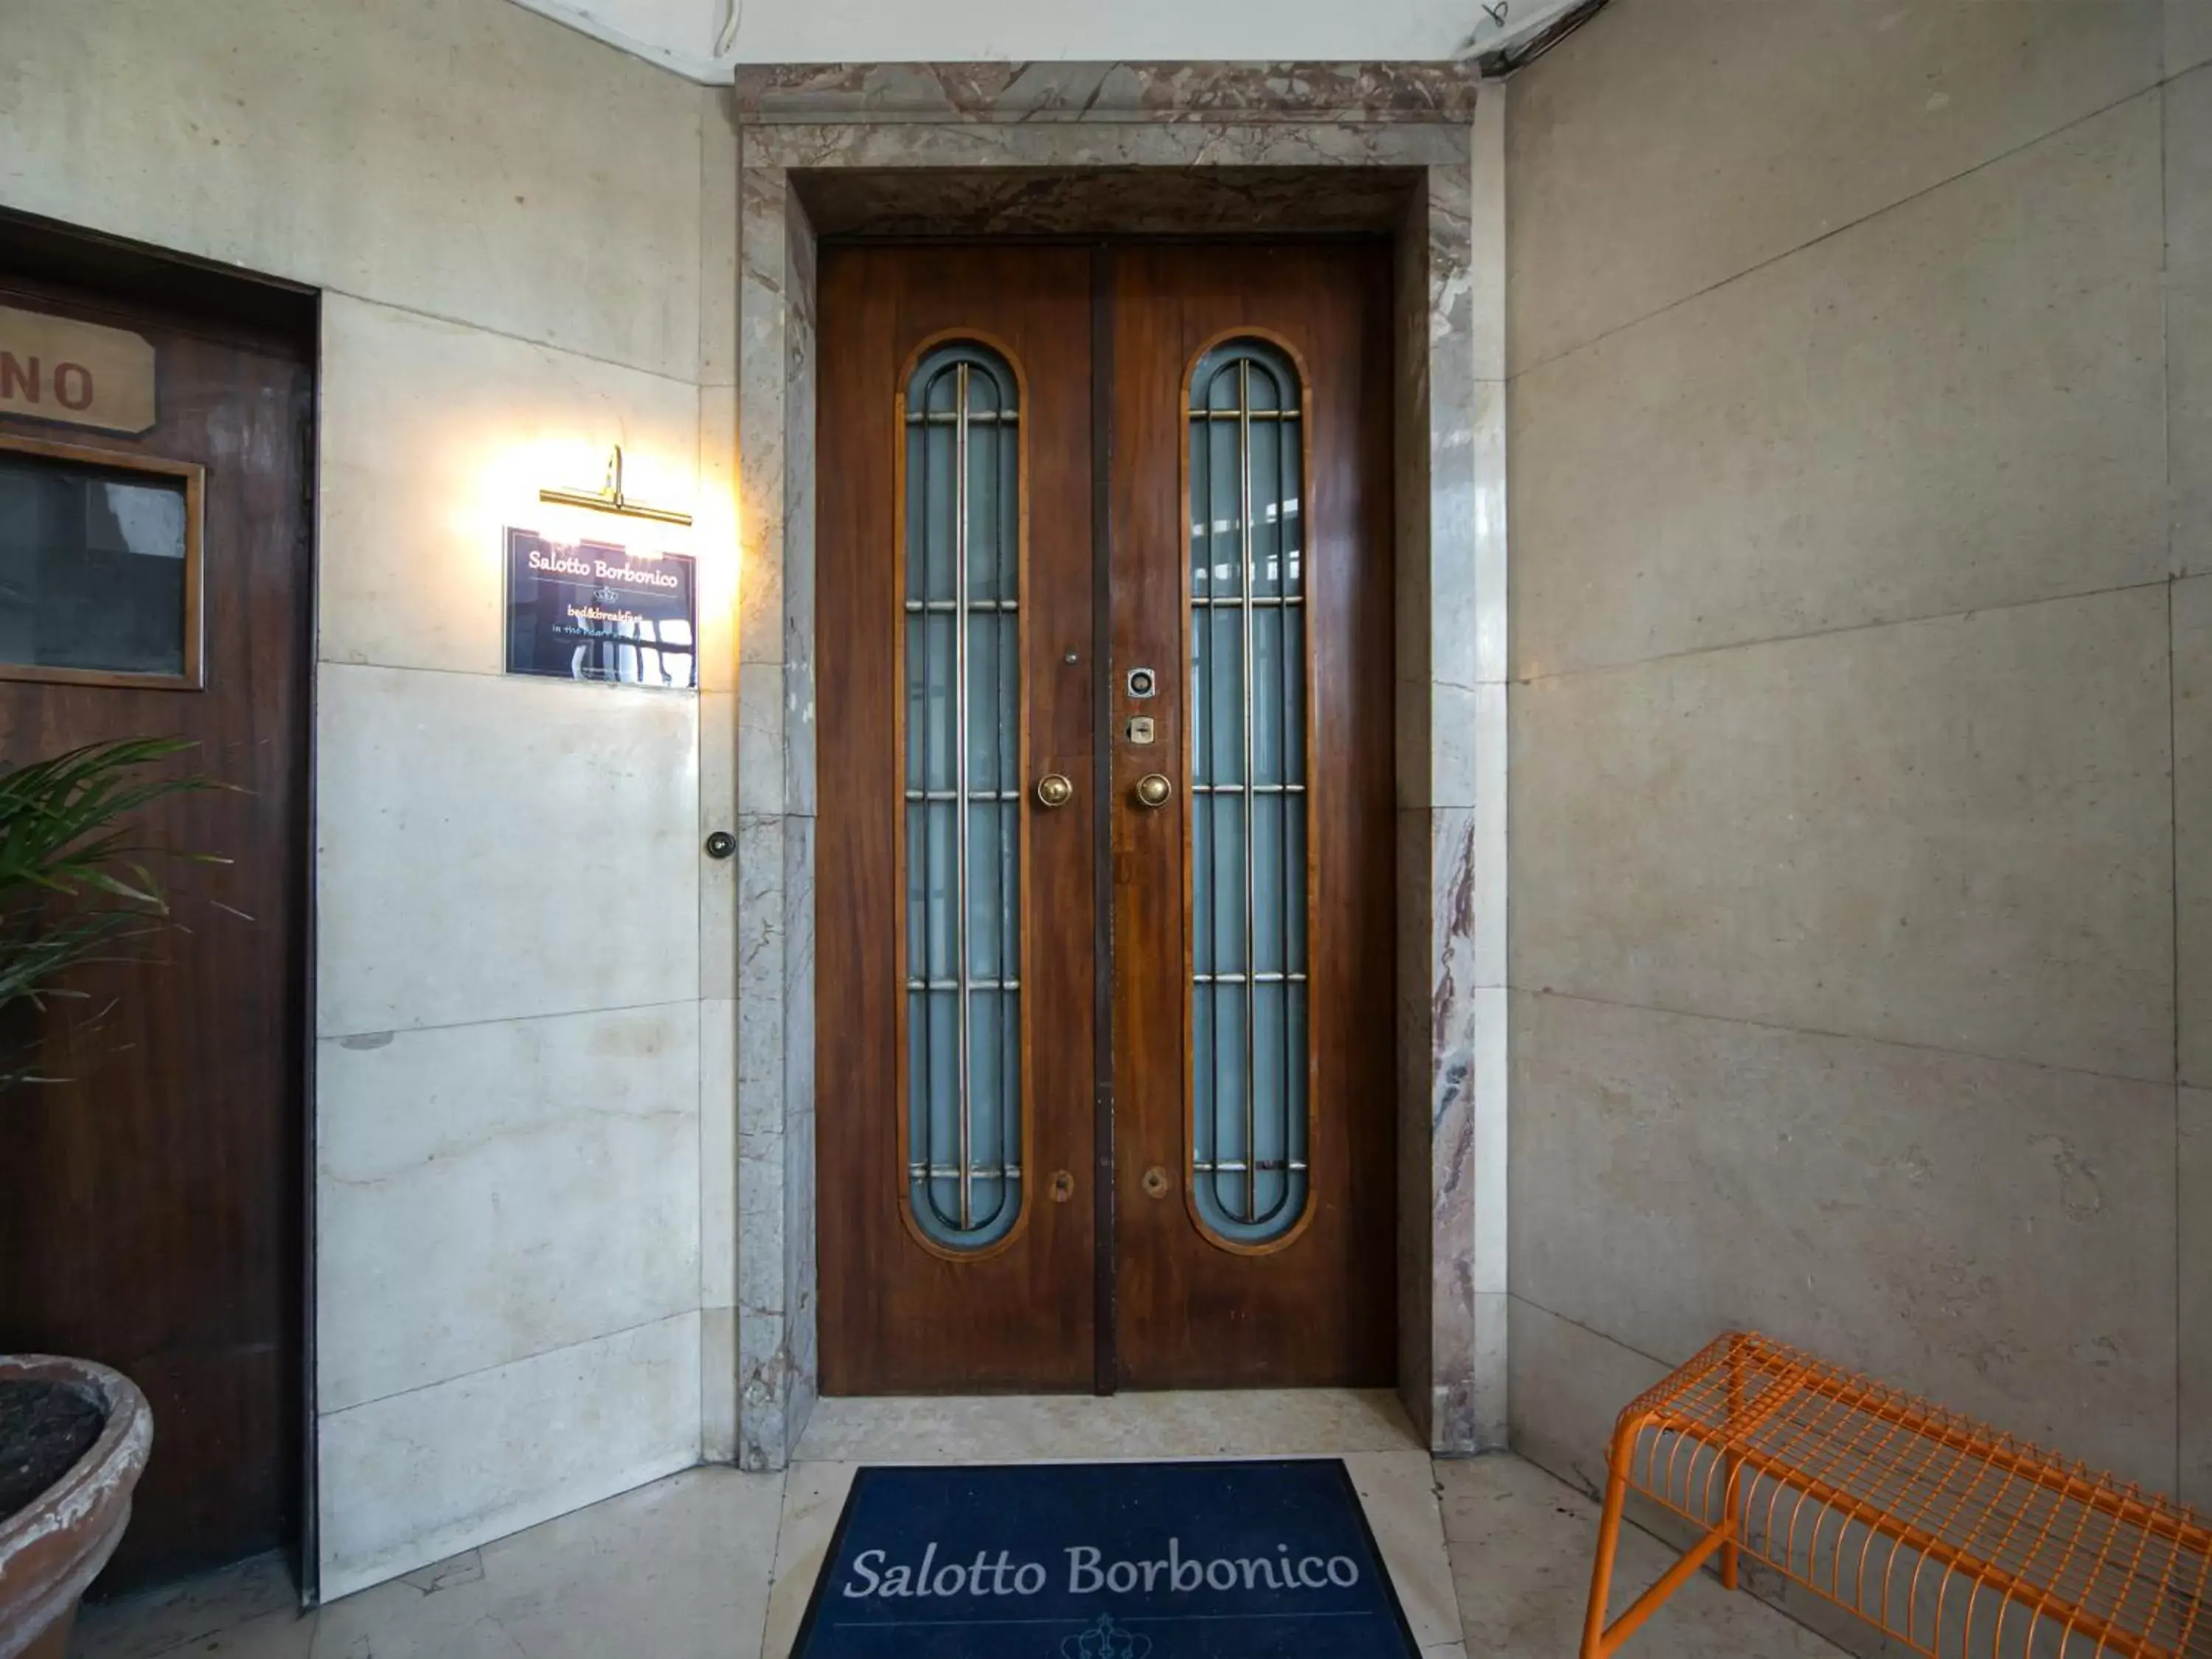 Facade/entrance in Salotto Borbonico